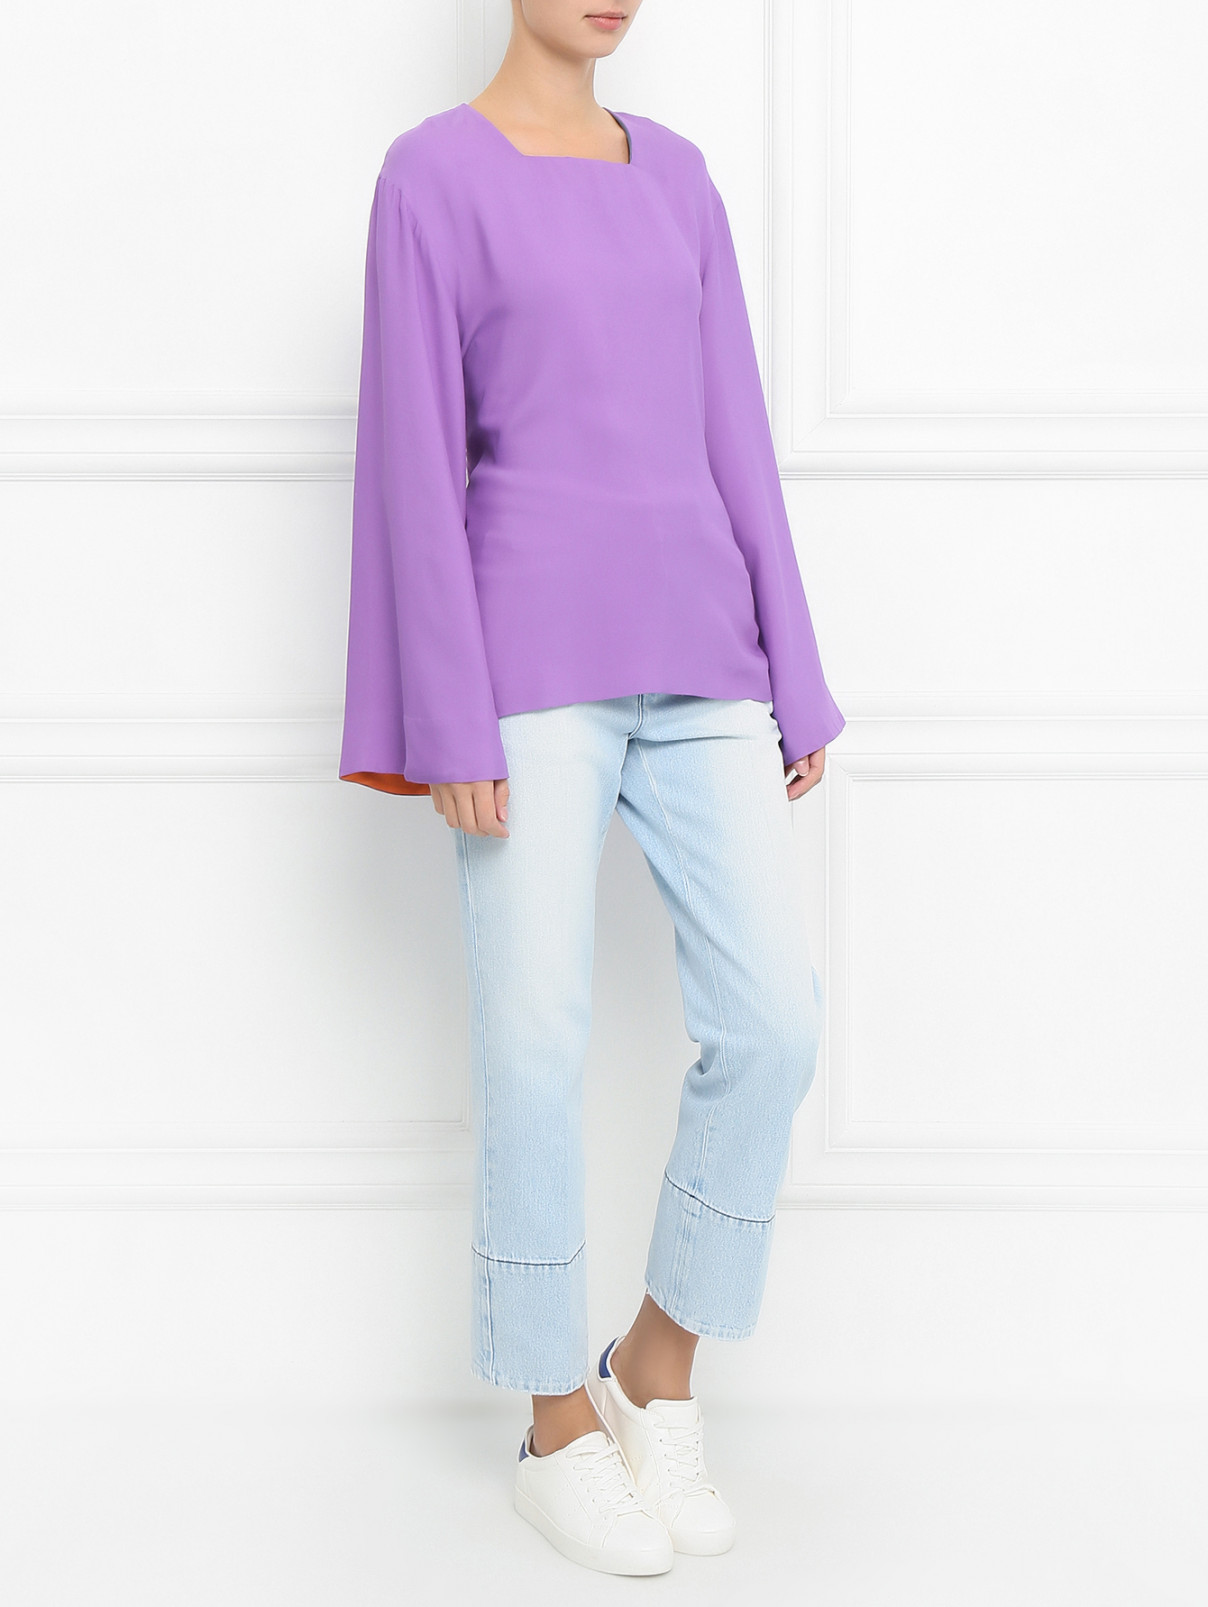 Блуза с контрастной отделкой Paul Smith  –  Модель Общий вид  – Цвет:  Фиолетовый